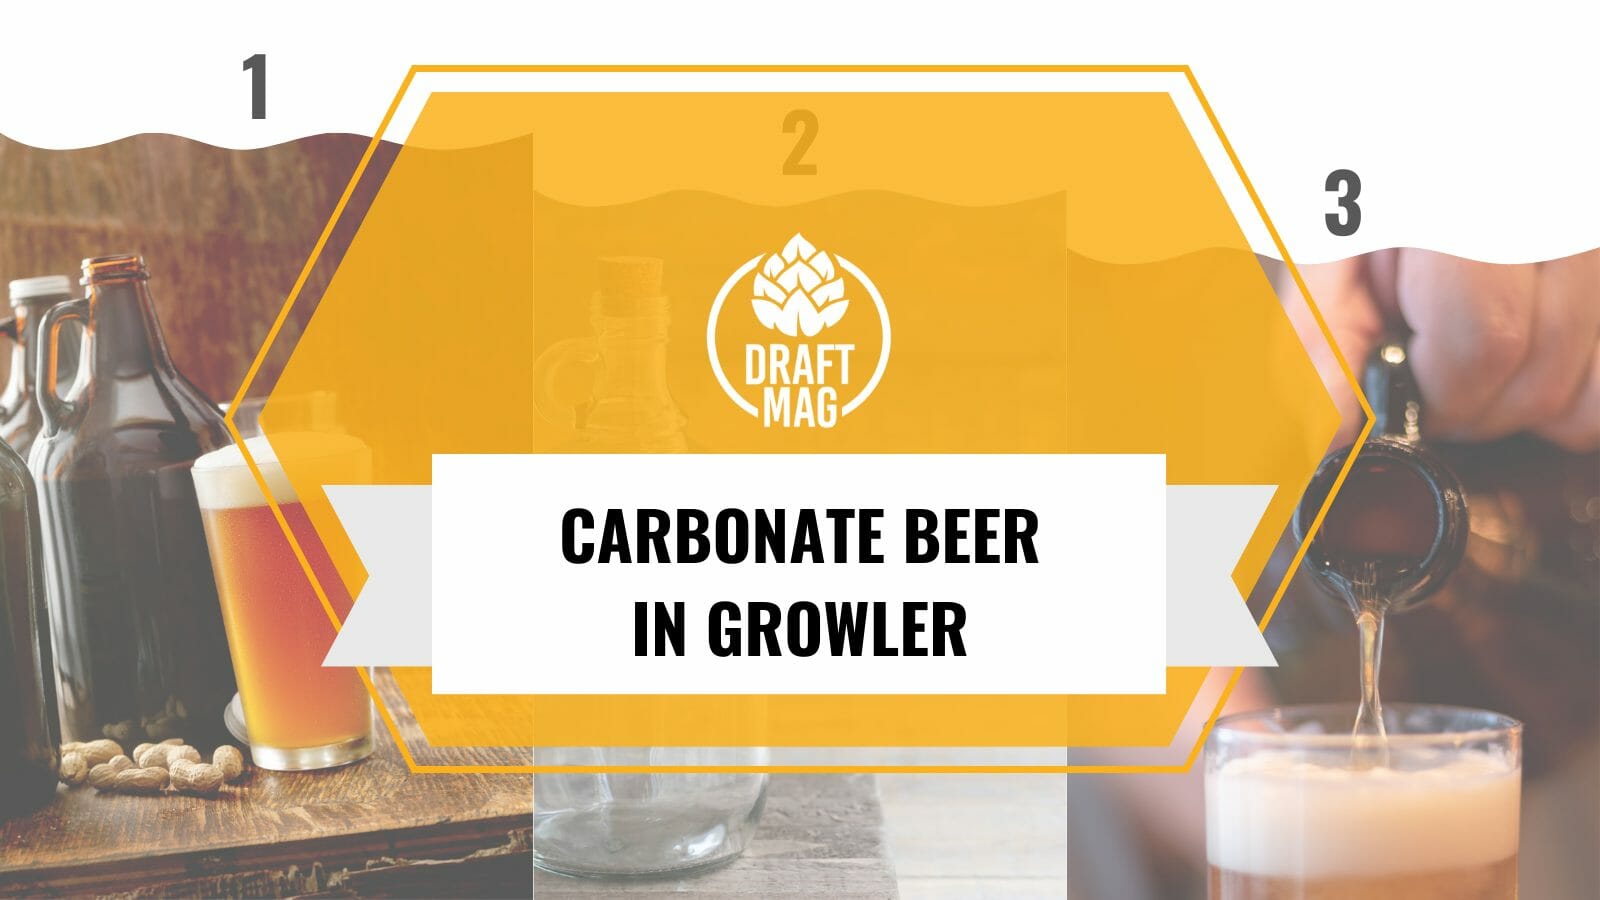 Carbonate beer in growler